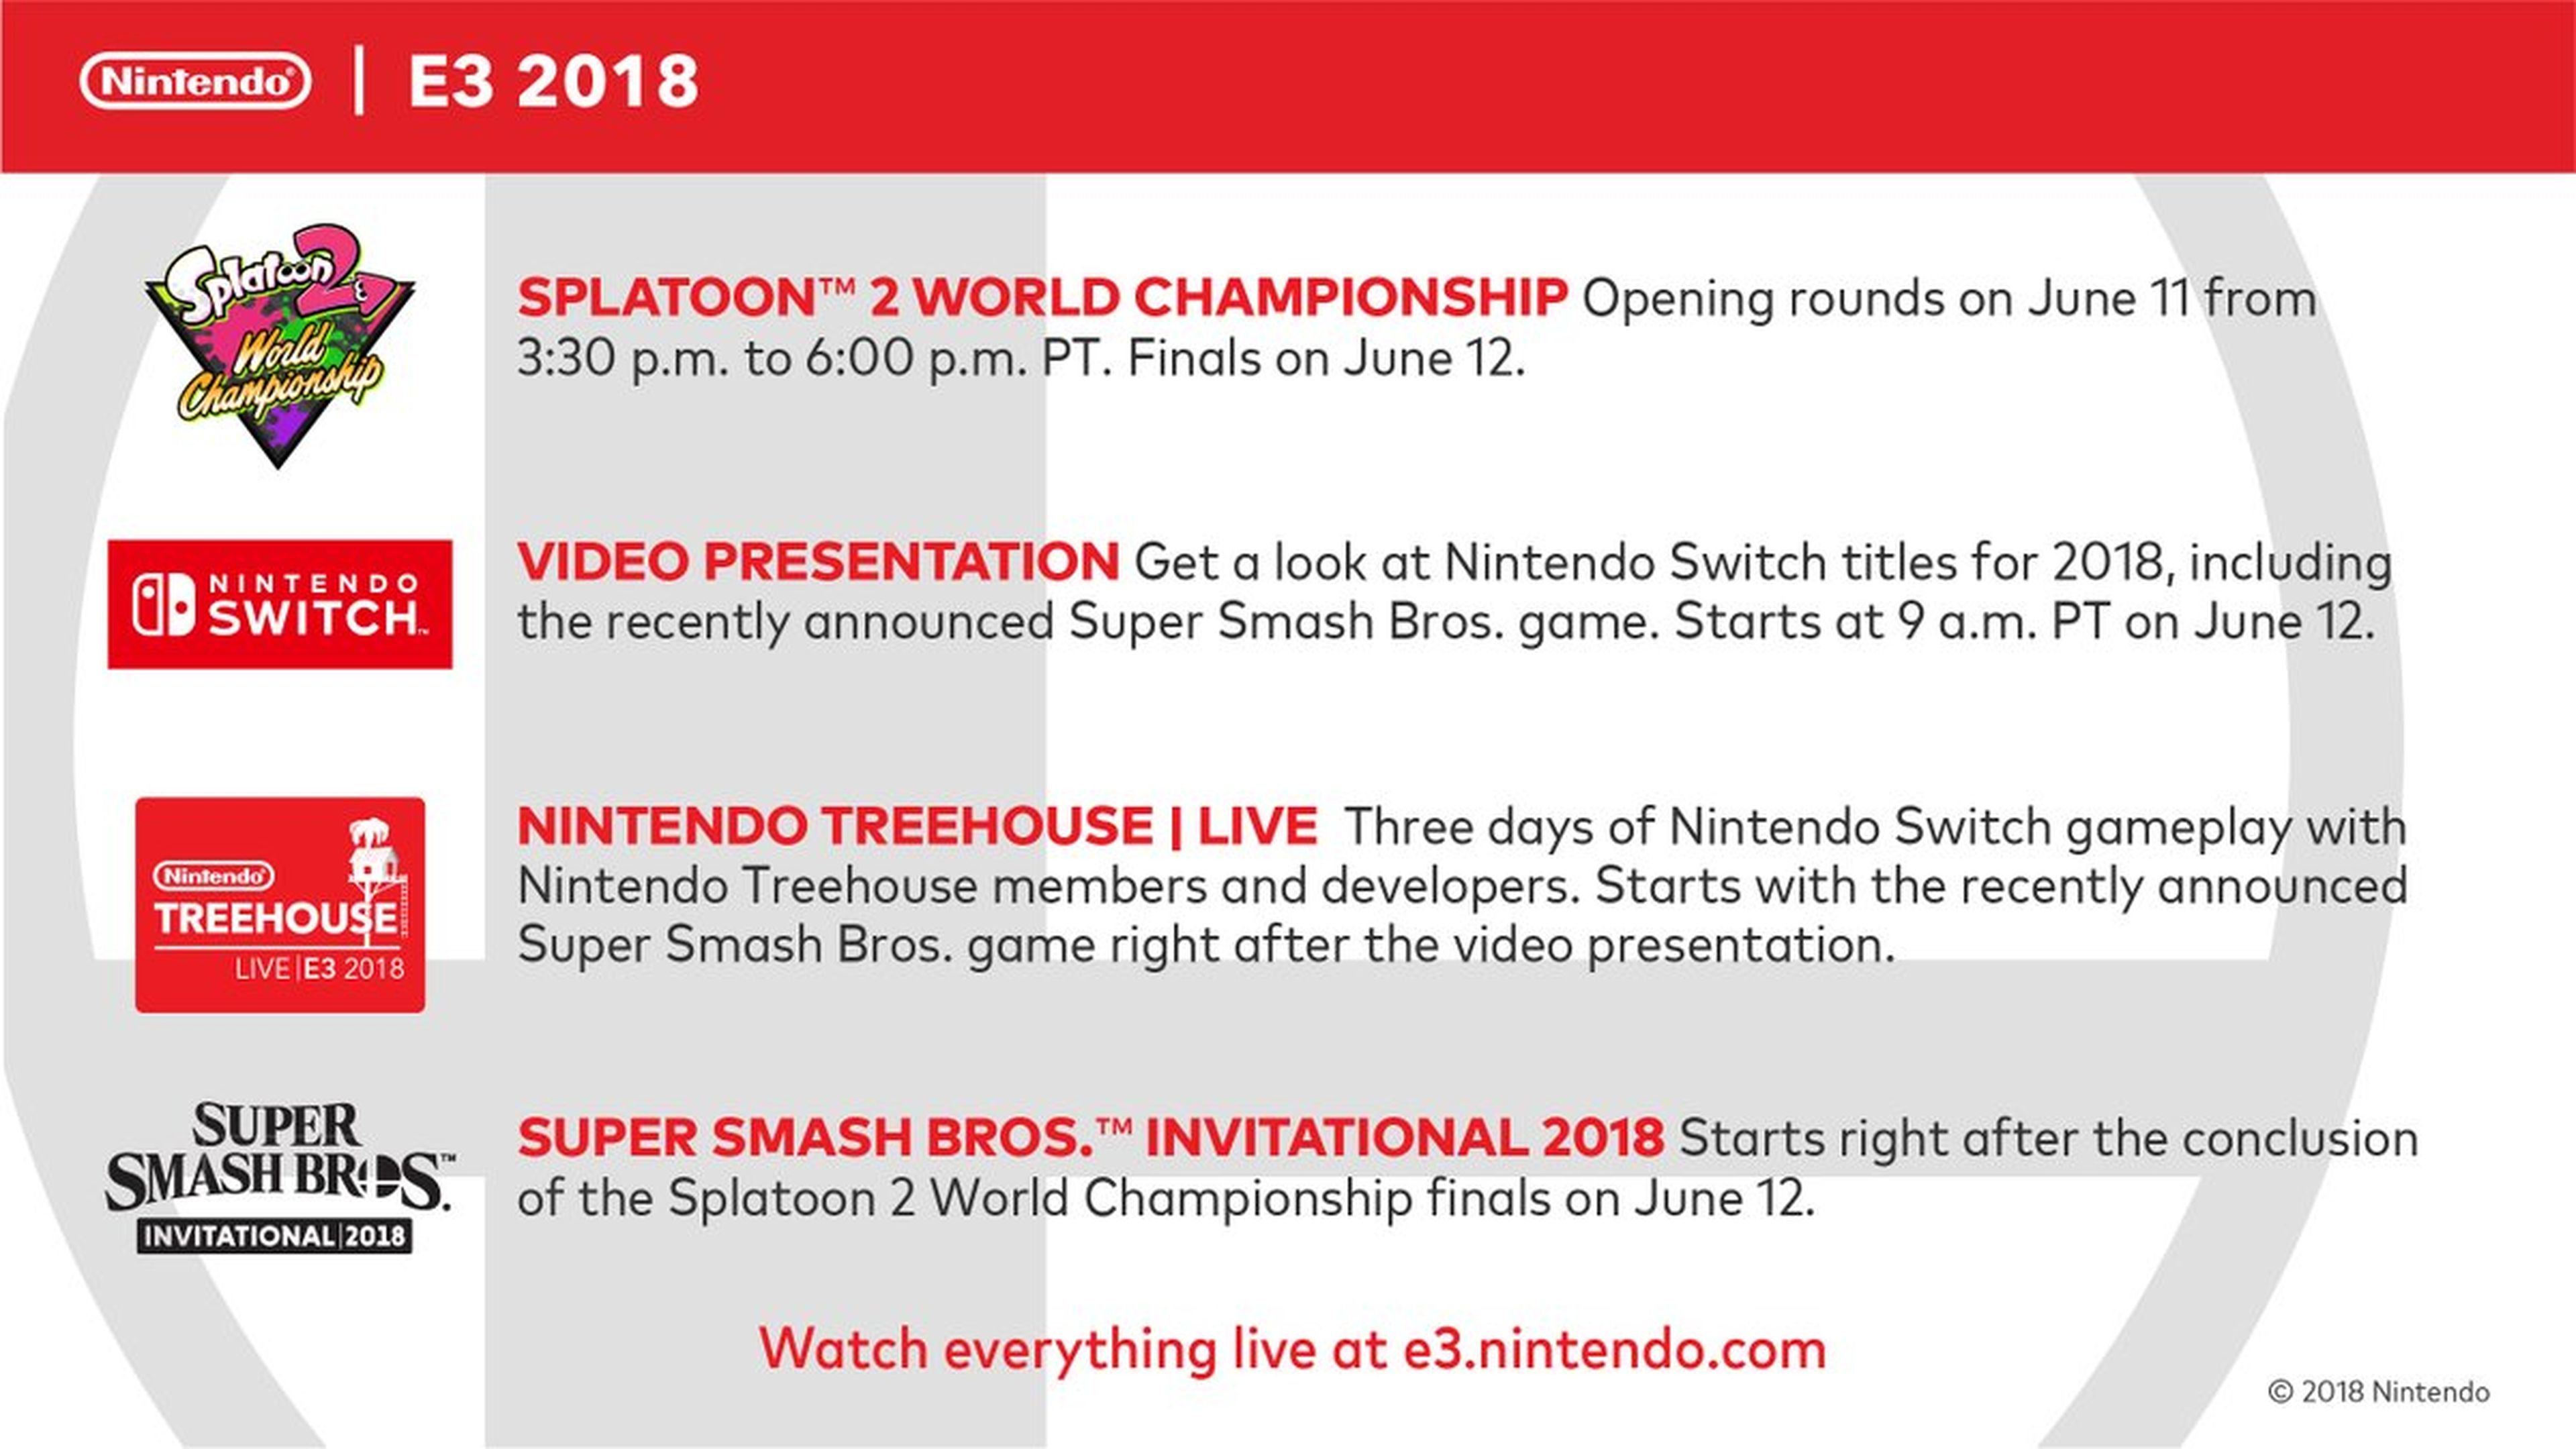 Nintendo E3 2018